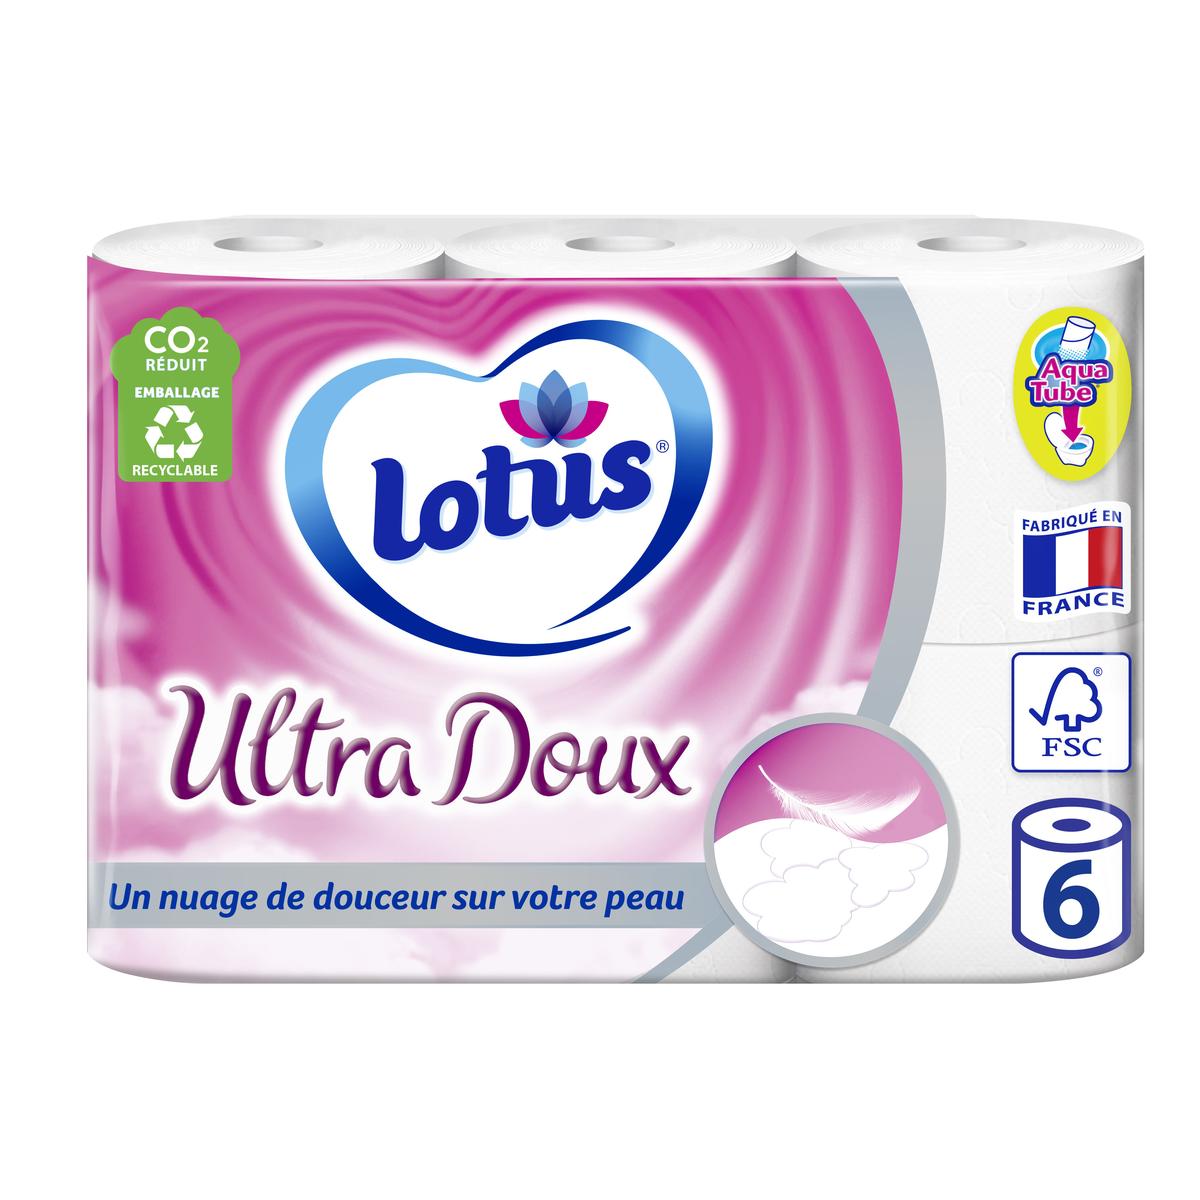 Acheter Lotus Papier toilette - Pure Natural Ecolabel, 6 rouleaux